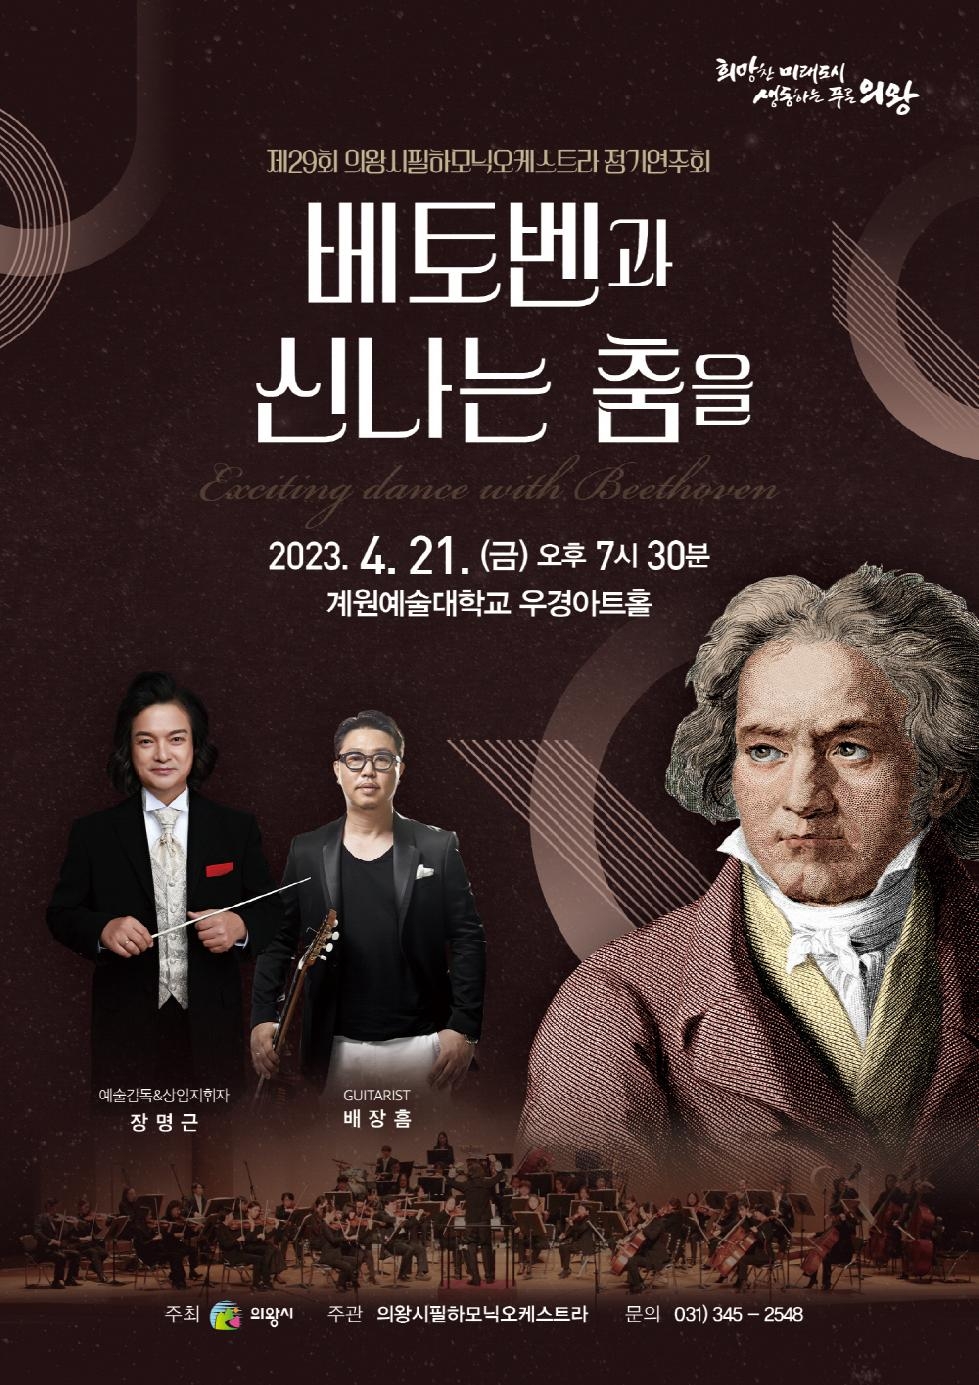 의왕시필하모닉오케스트라, 제29회 정기연주회 개최